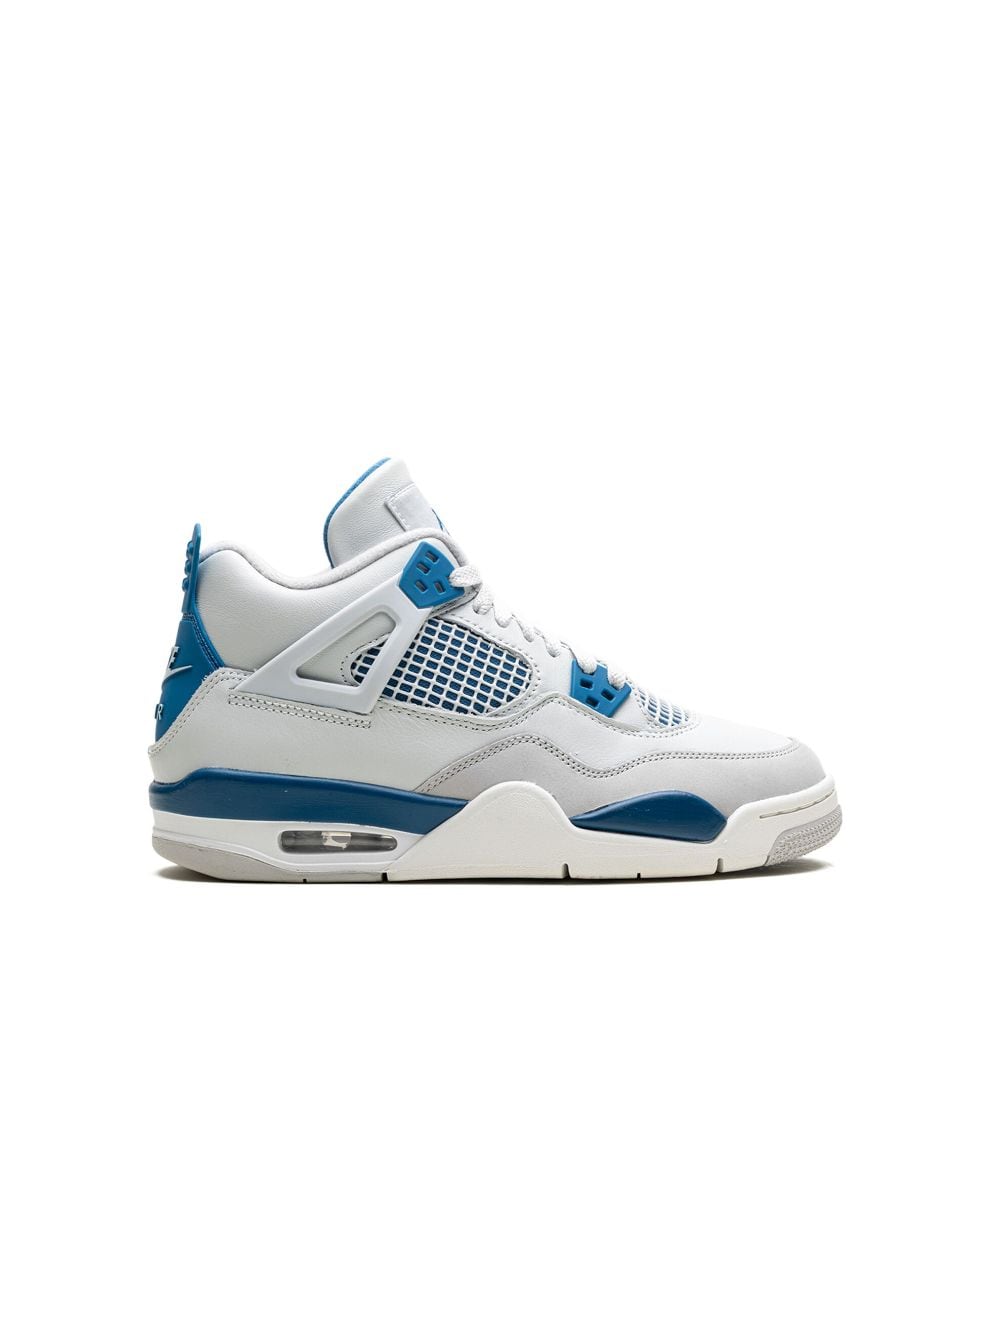 Image 2 of Jordan Kids Air Jordan 4 "Military Blue" sneakers